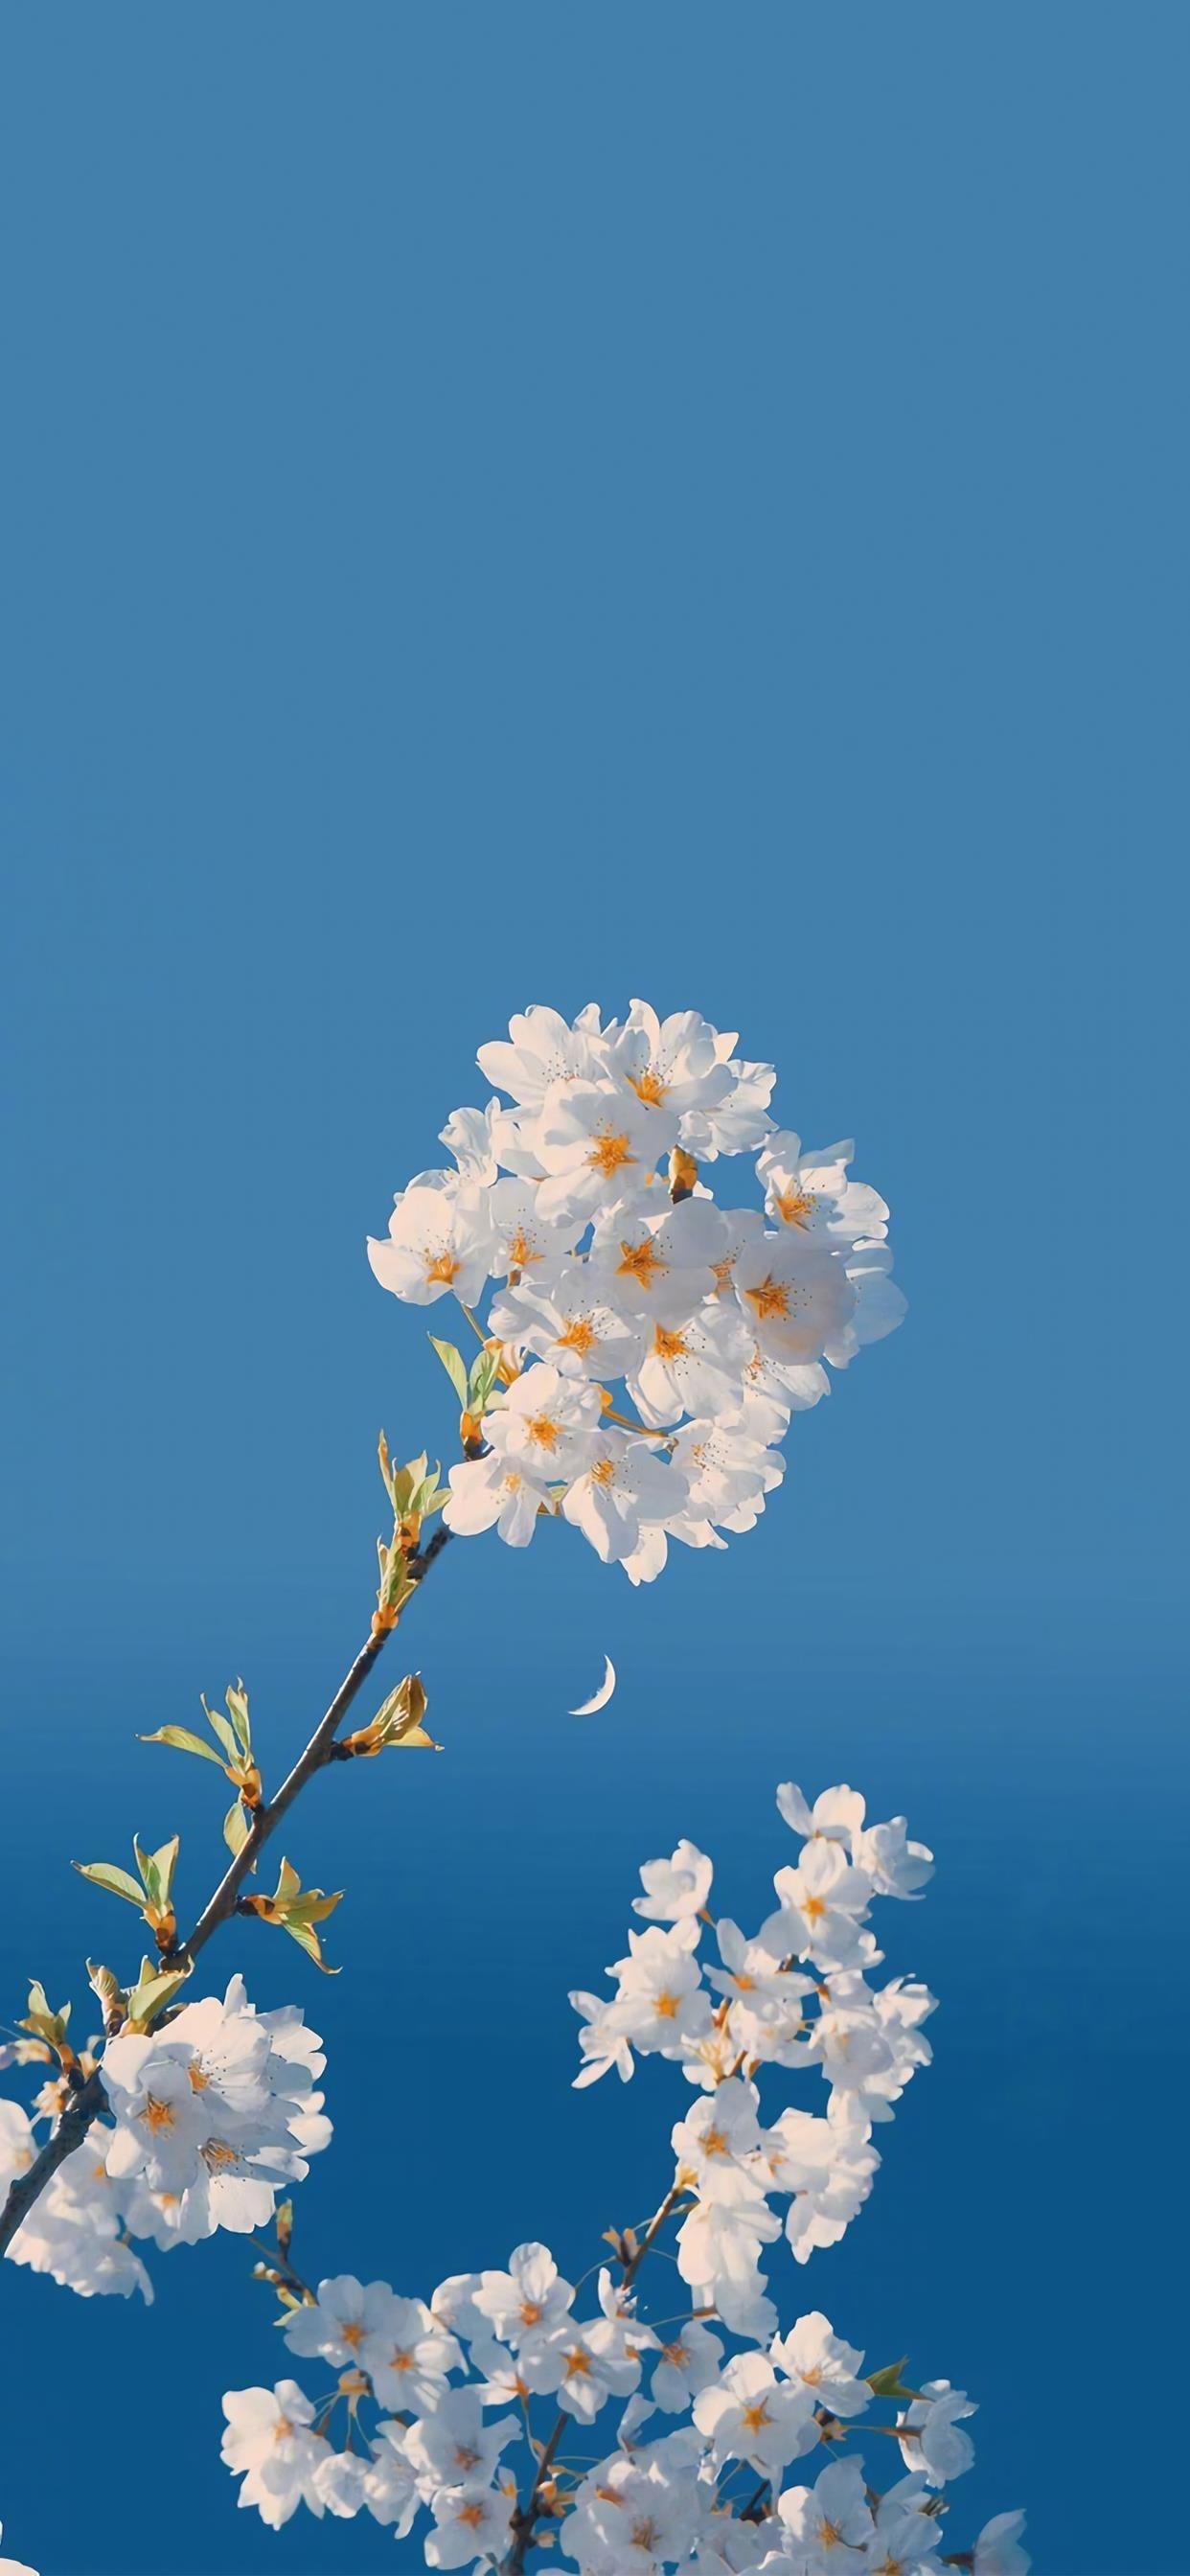 向着蓝天绽放美丽的花卉唯美手机壁纸图片